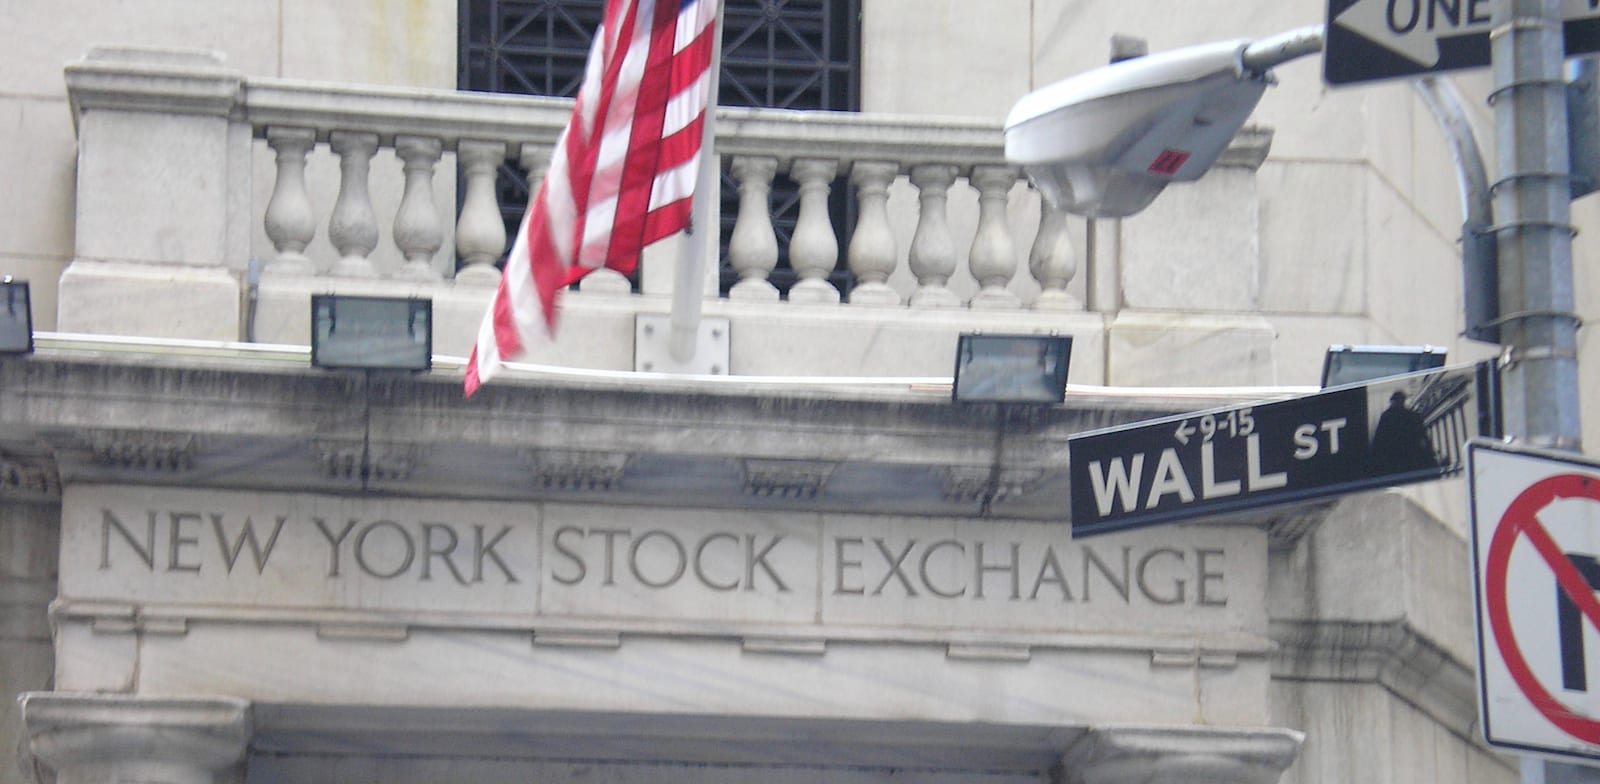 שלט רחוב וול סטריט, והכניסה לבורסת NYSE בניו יורק / צילום: עוזי בלומר